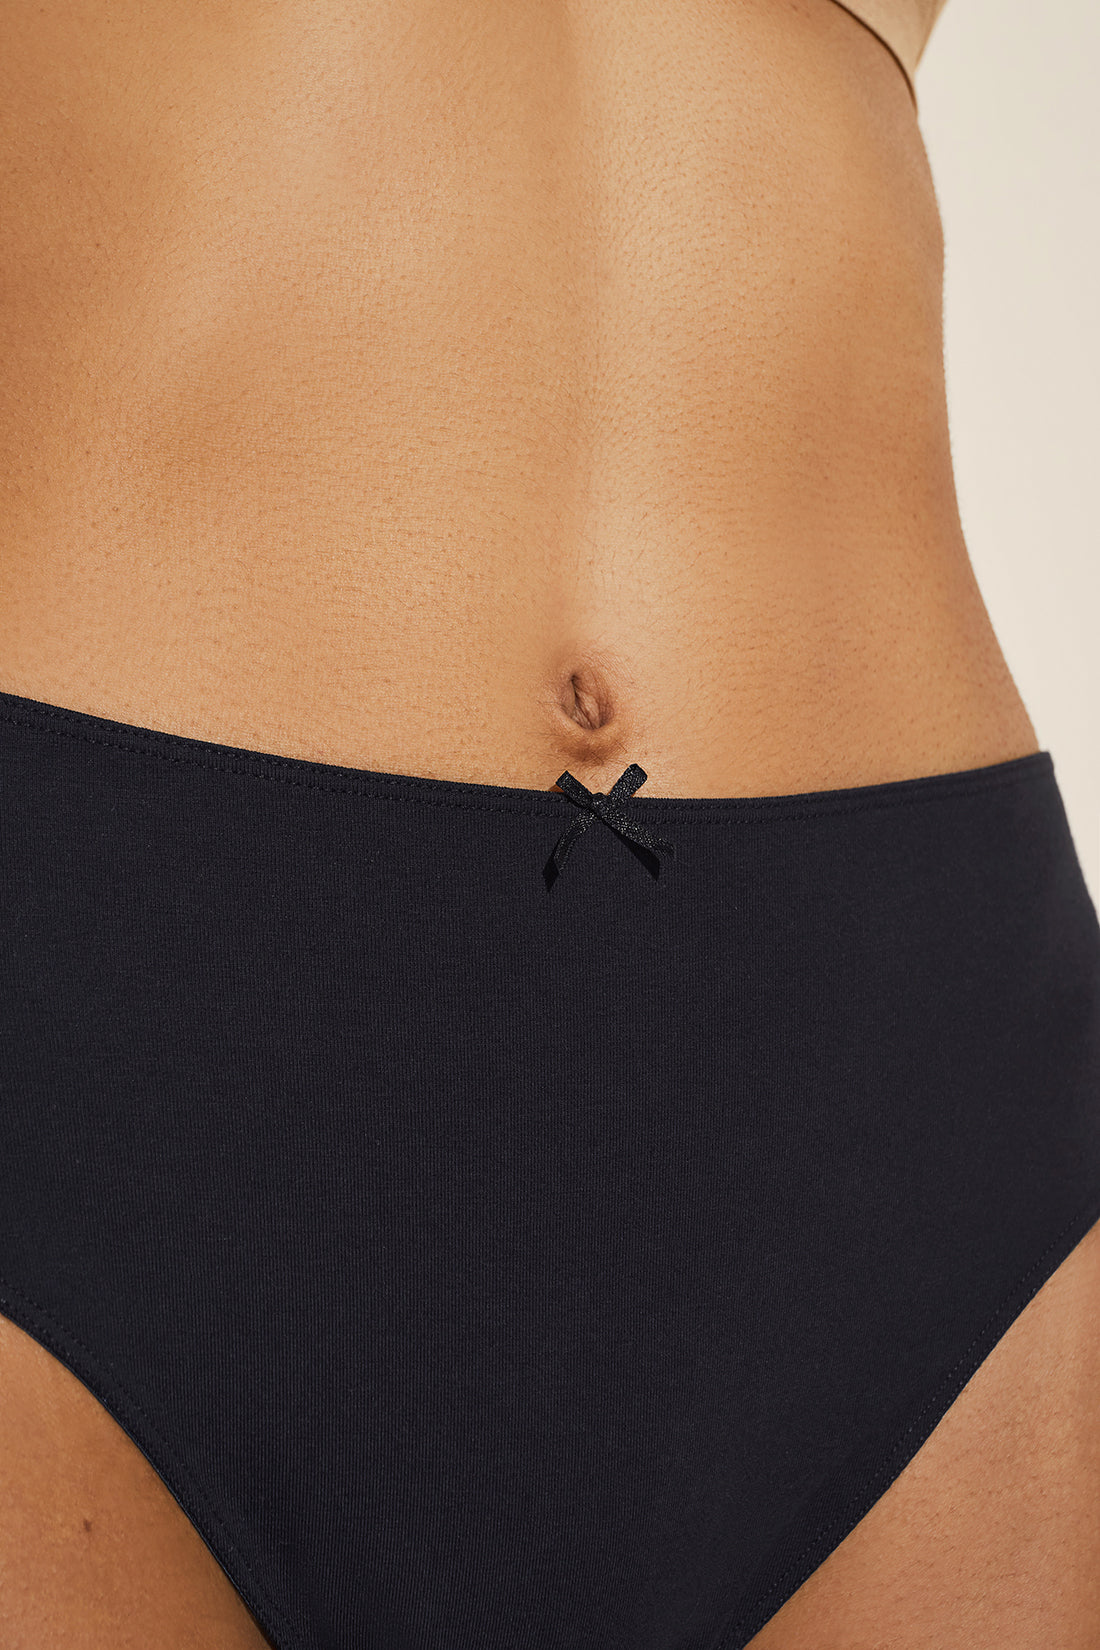 Women's Breezeshooter Briefs Underwear